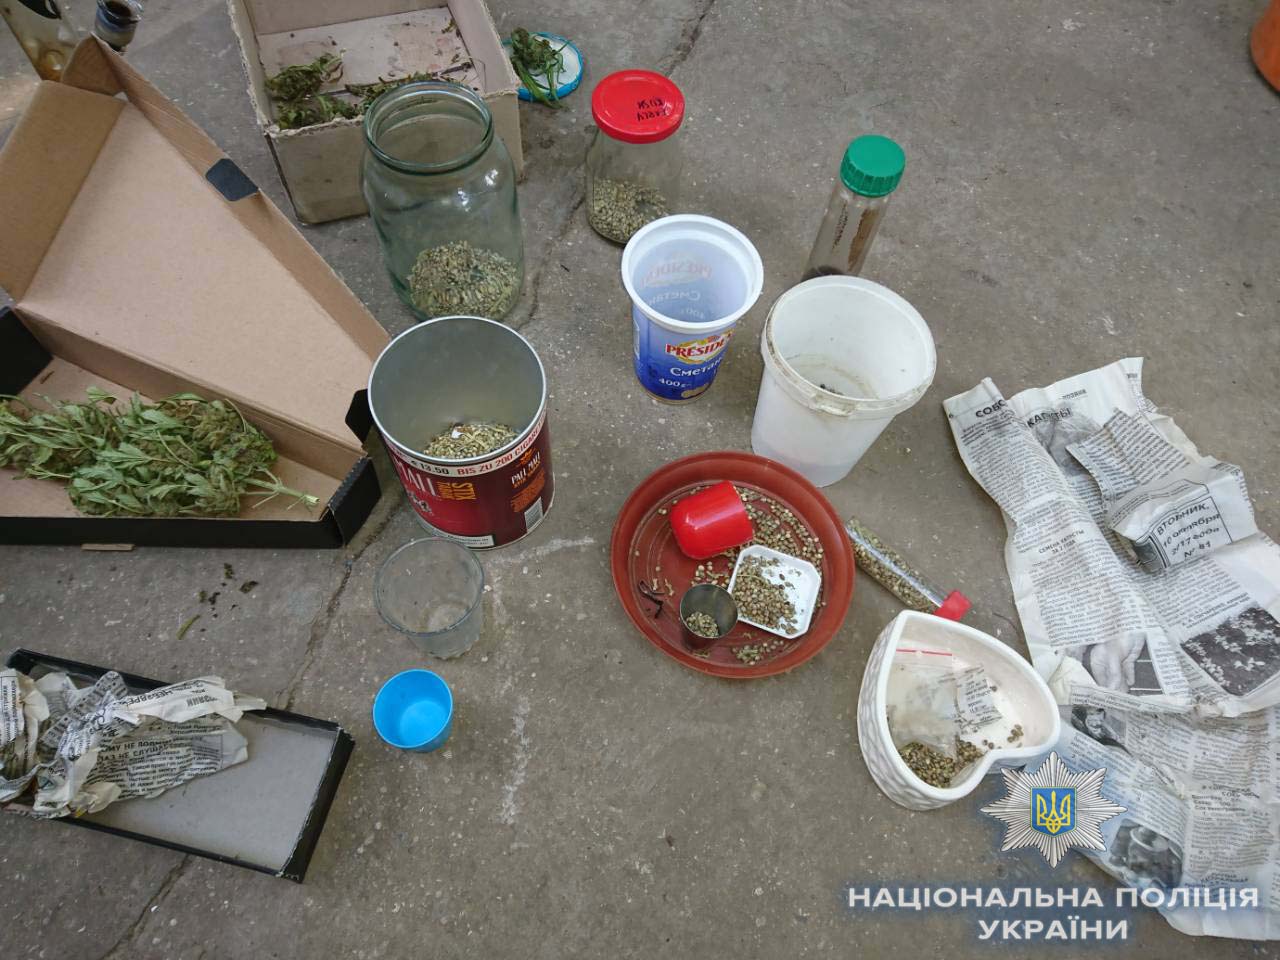 Профилактическая отработка Одесской области полицией: всего за один день - больше 10 задержаний с наркотиками